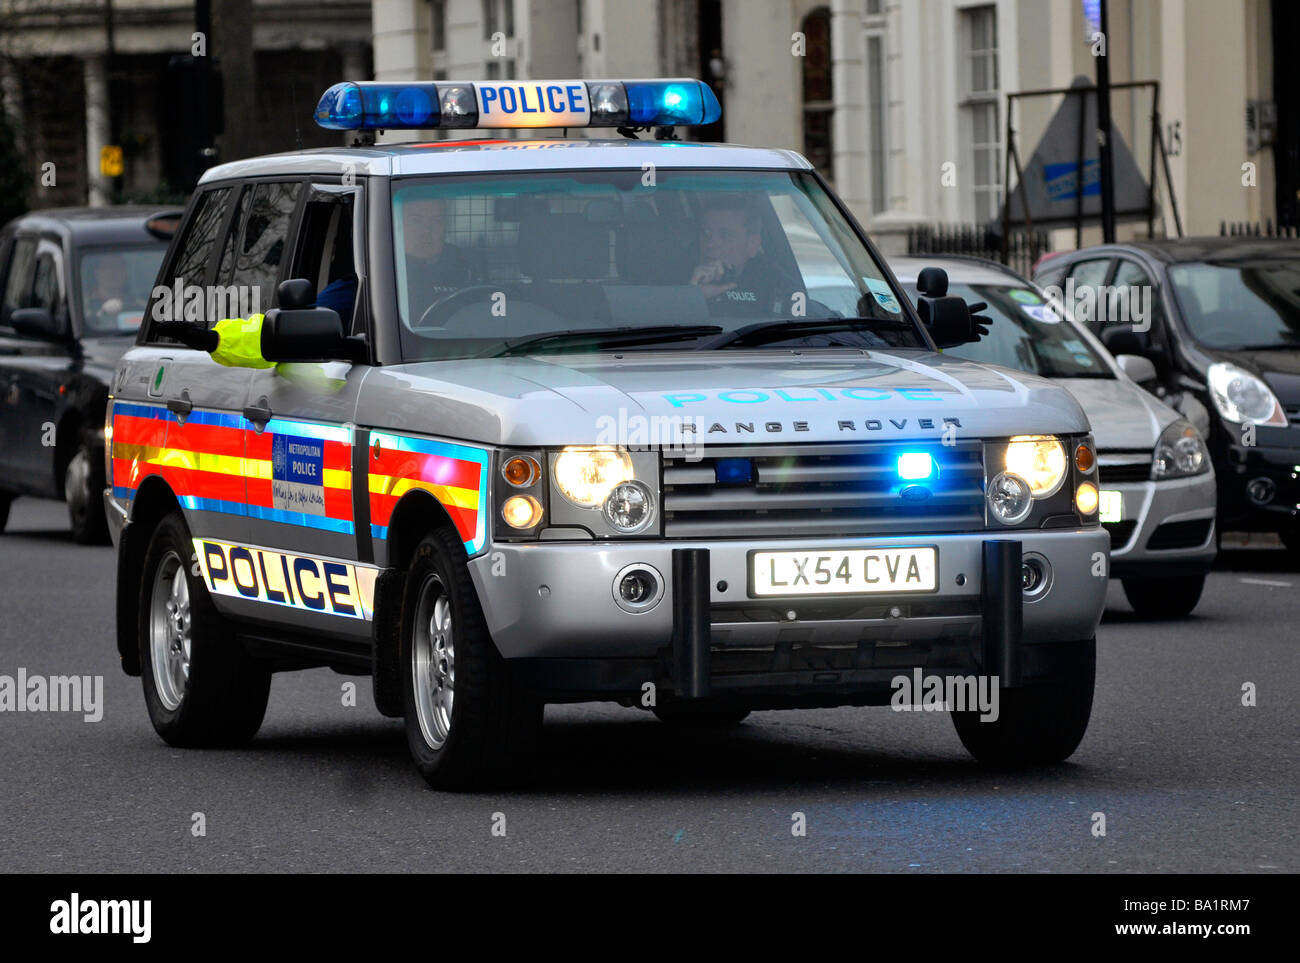 Metropolitan police "Land Rover" sur un appel, Londres, Angleterre, Royaume-Uni Banque D'Images